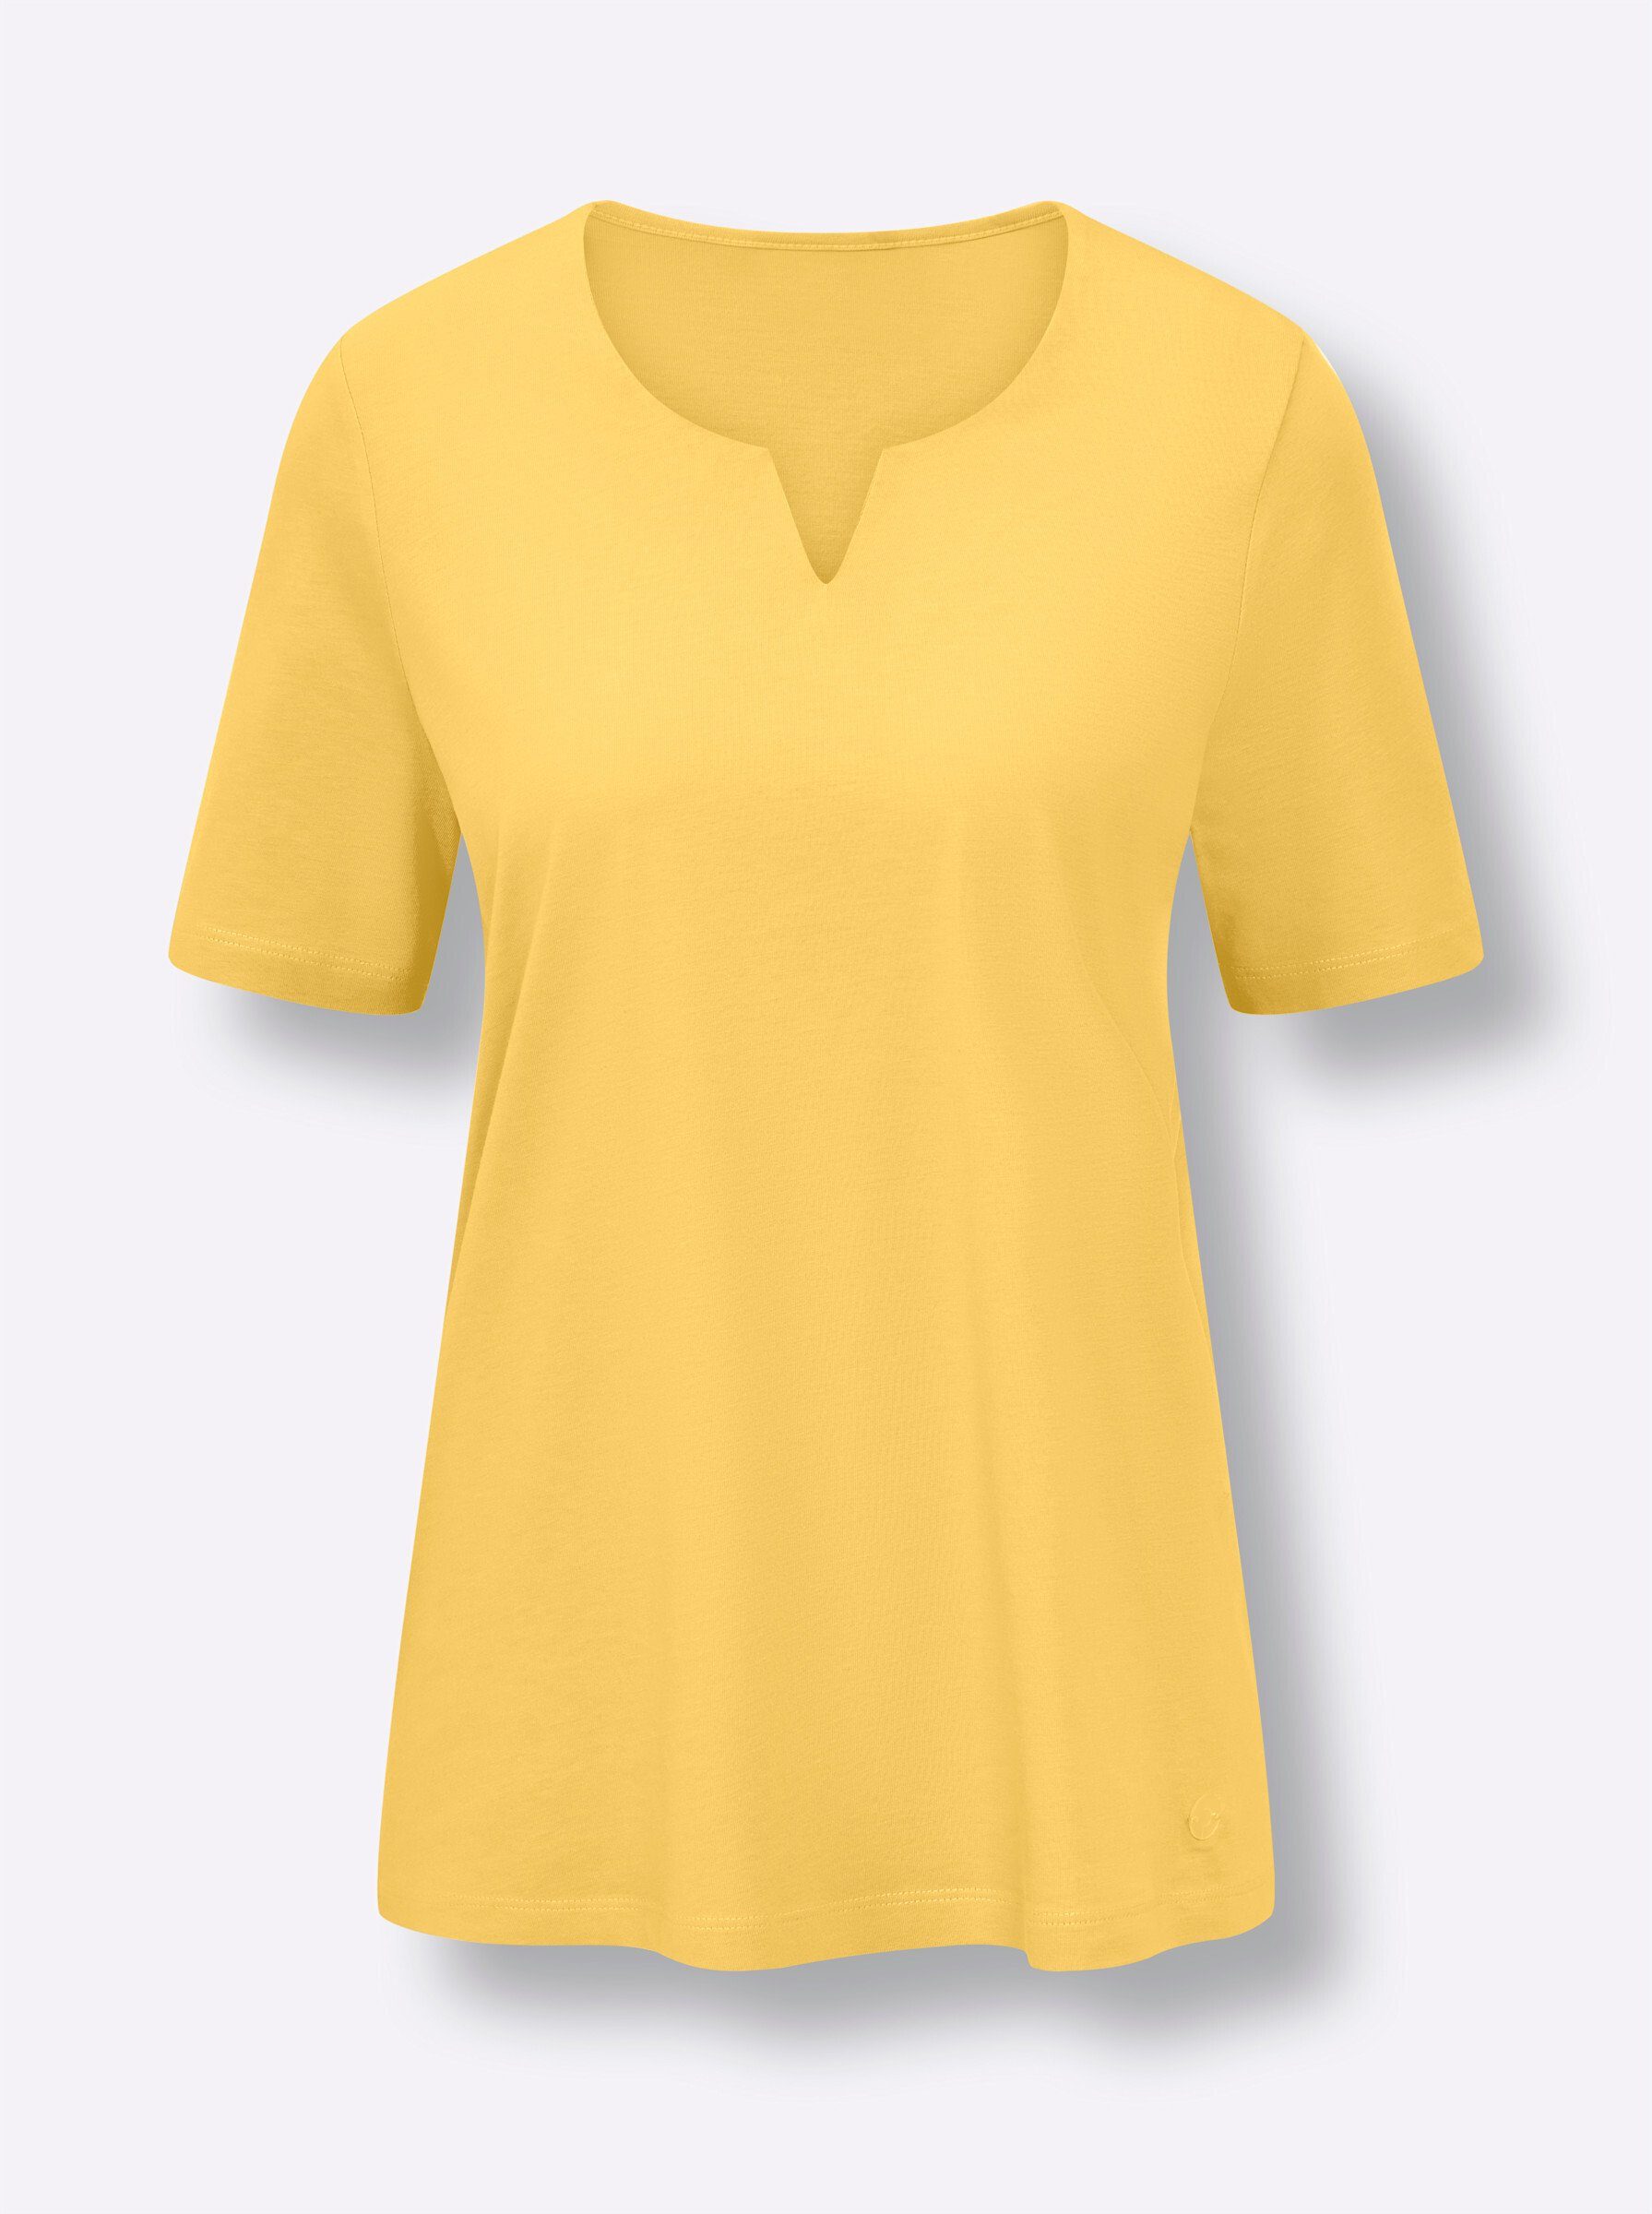 WEIDEN Schlafanzug gelb-schwarz-bedruckt WITT